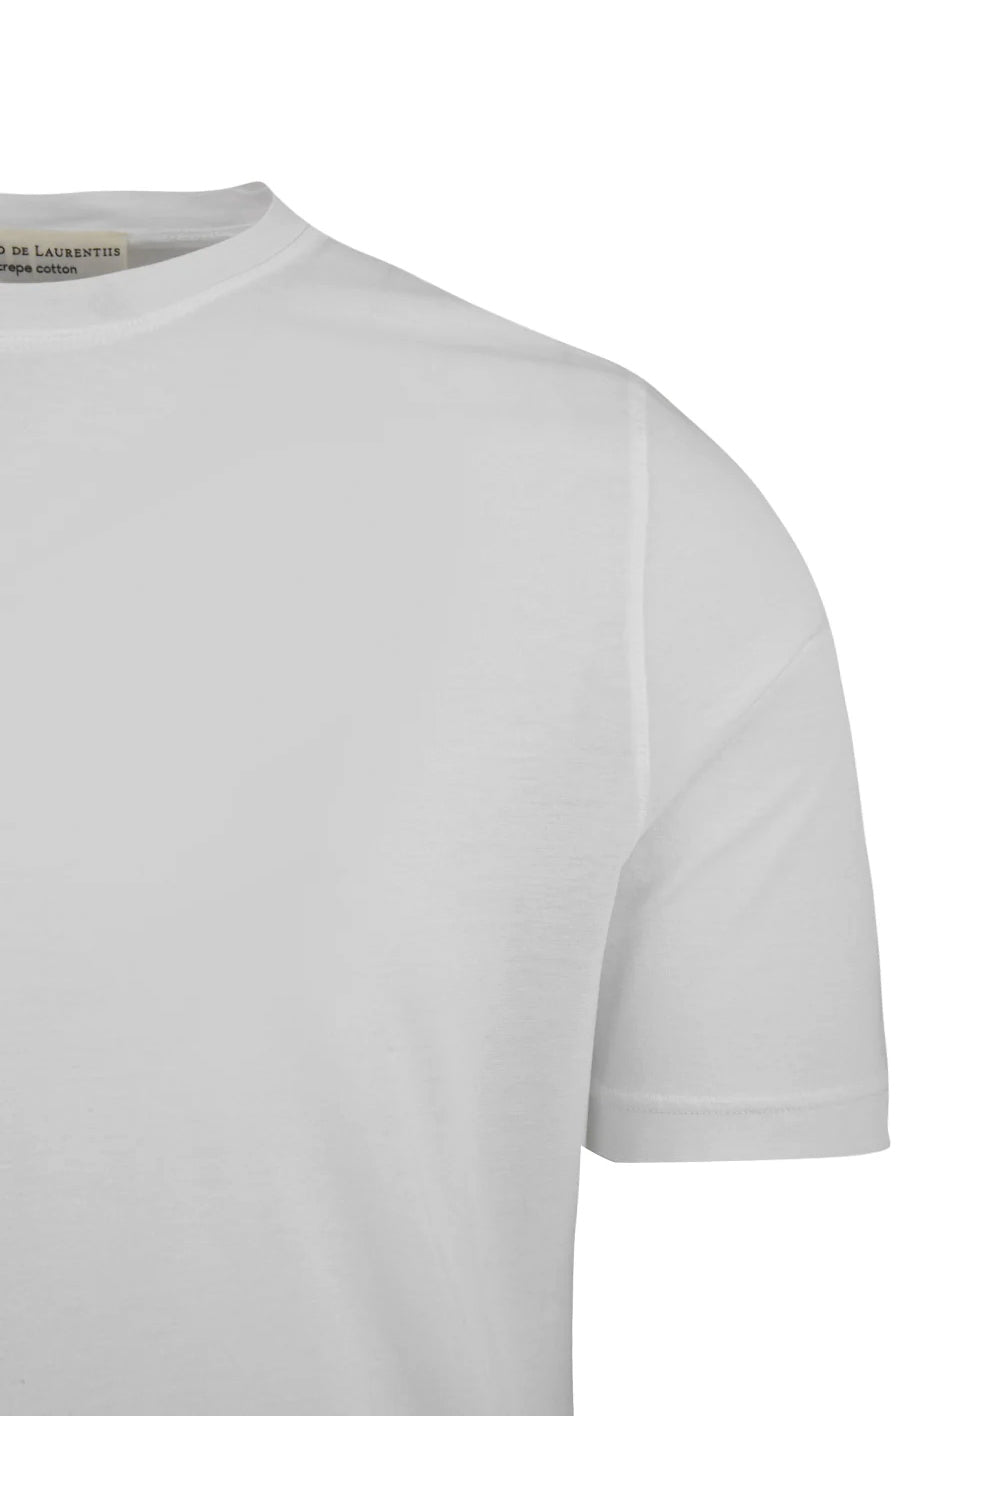 FILIPPO DE LAURENTIIS T-shirt crepe in jersey